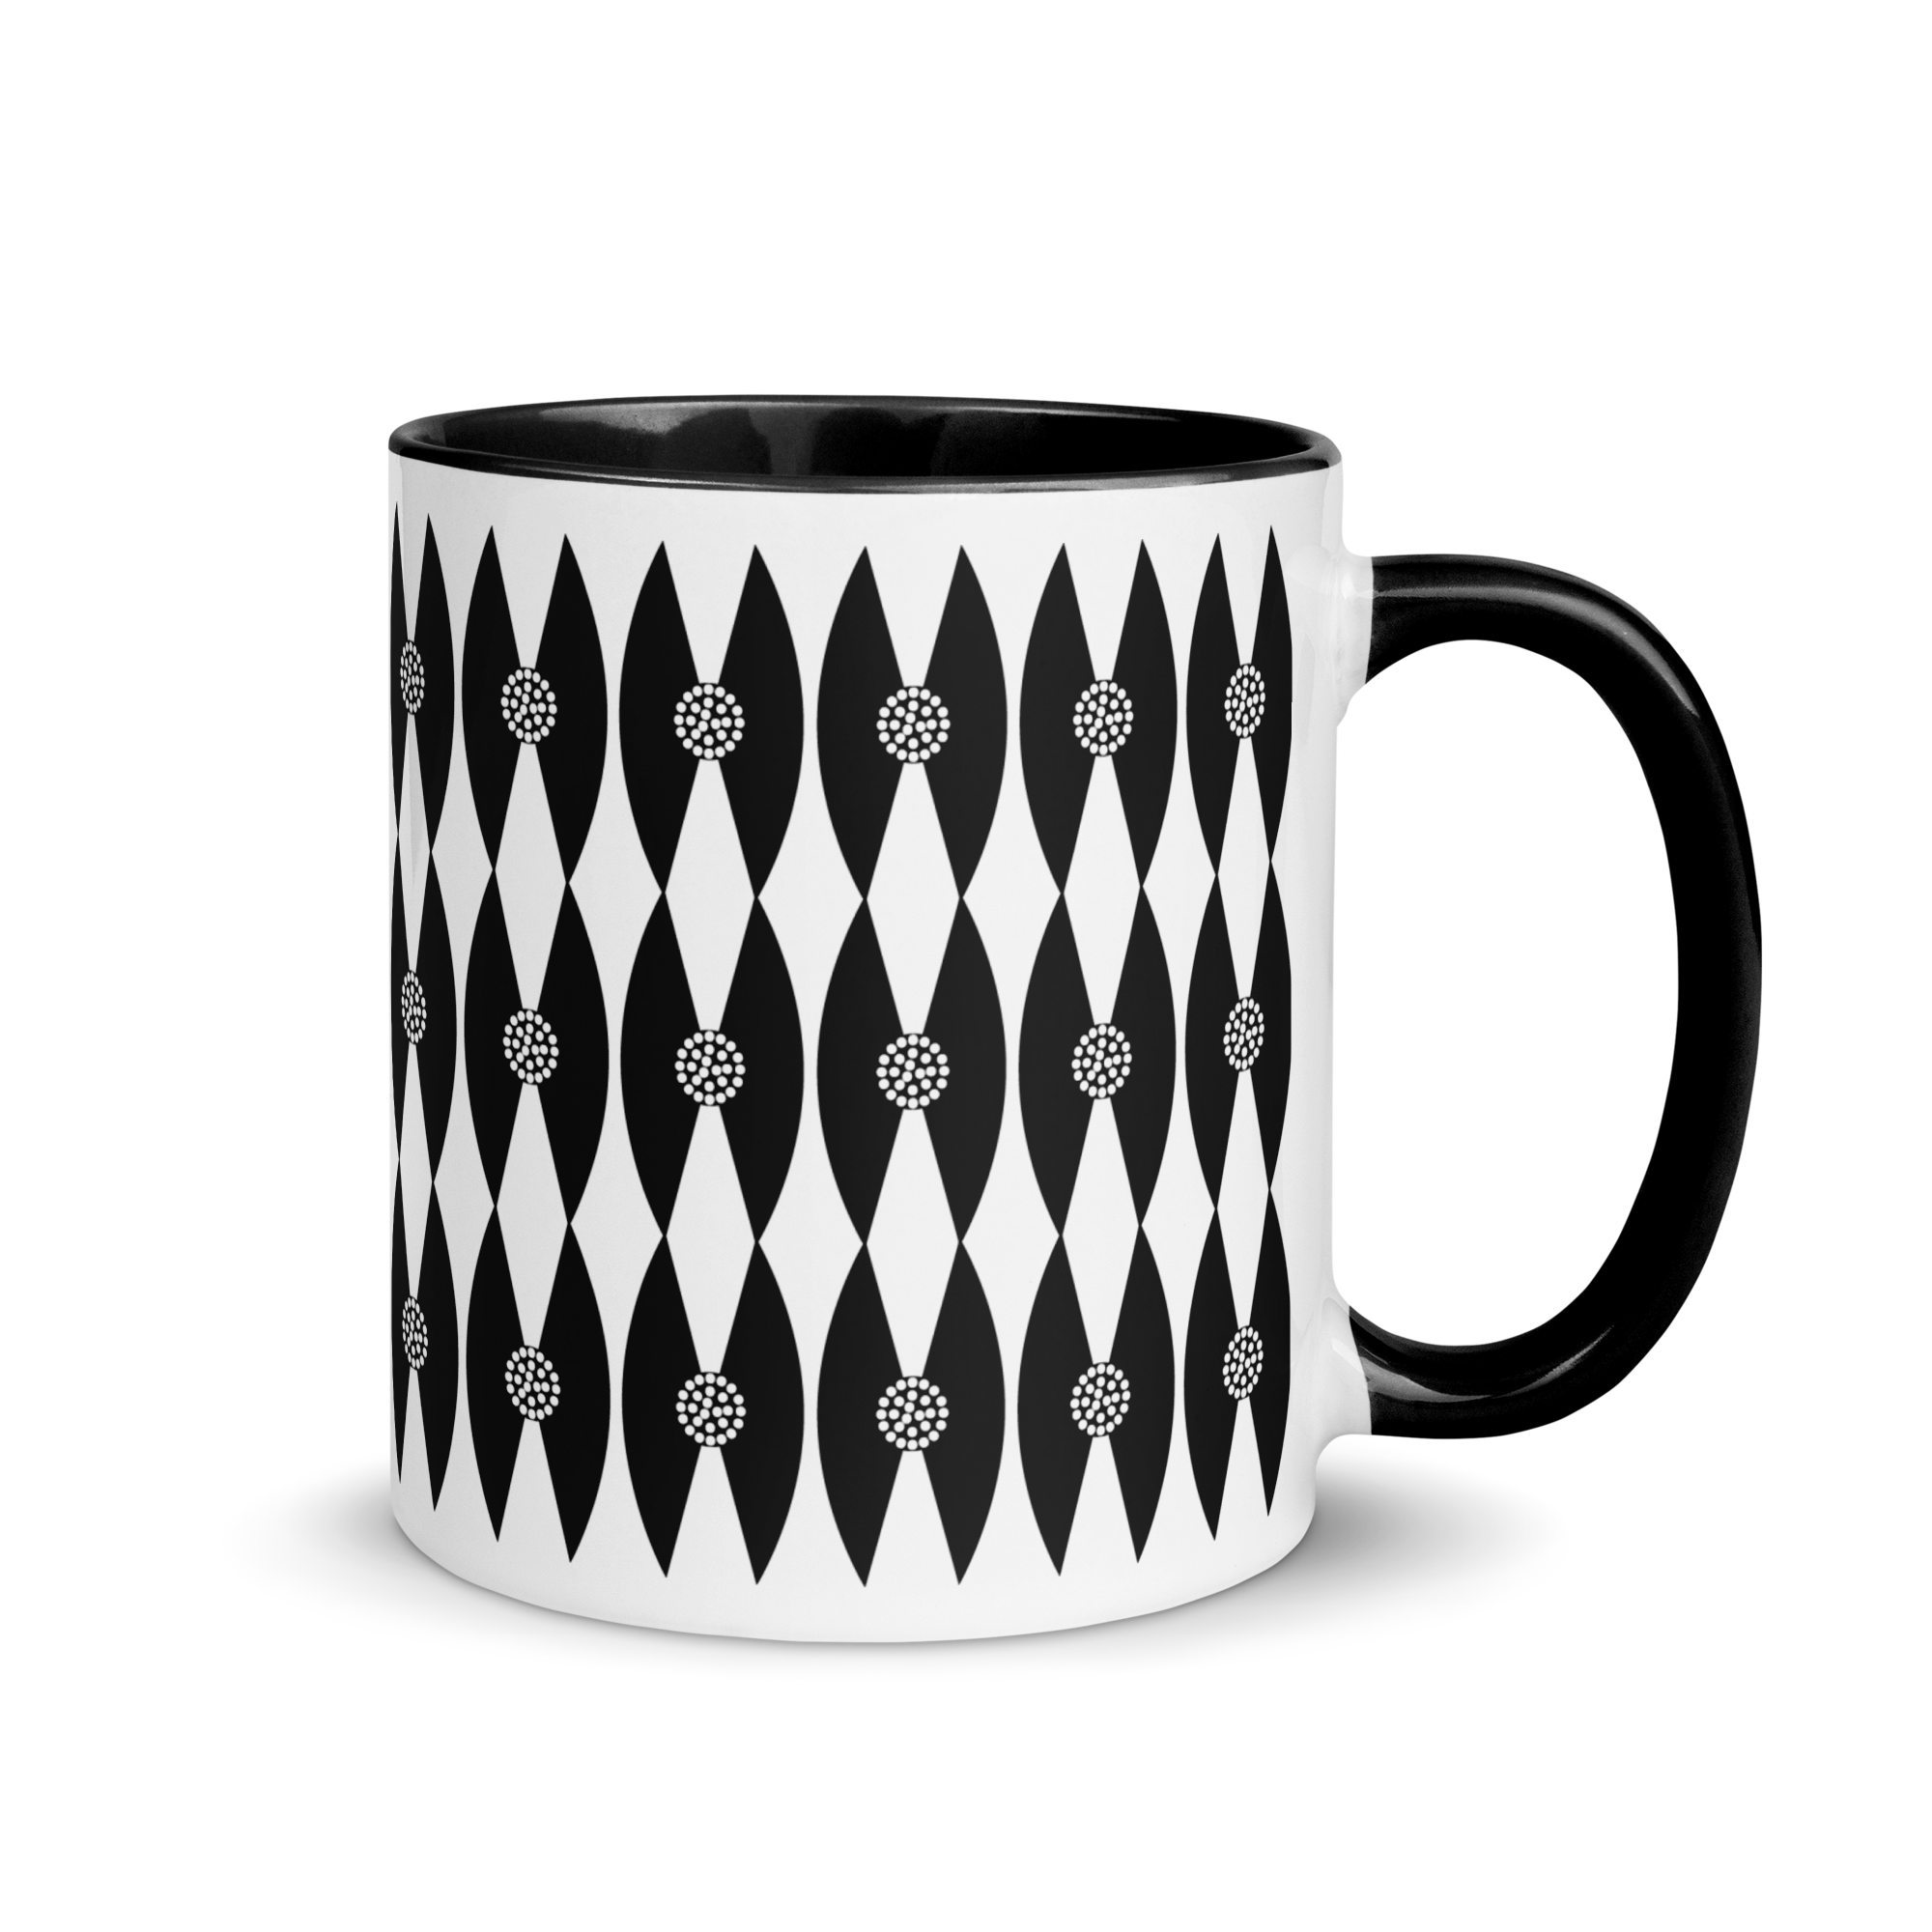 white-ceramic-mug-with-color-inside-black-11-oz-right-65e46ecd1fa3a.png